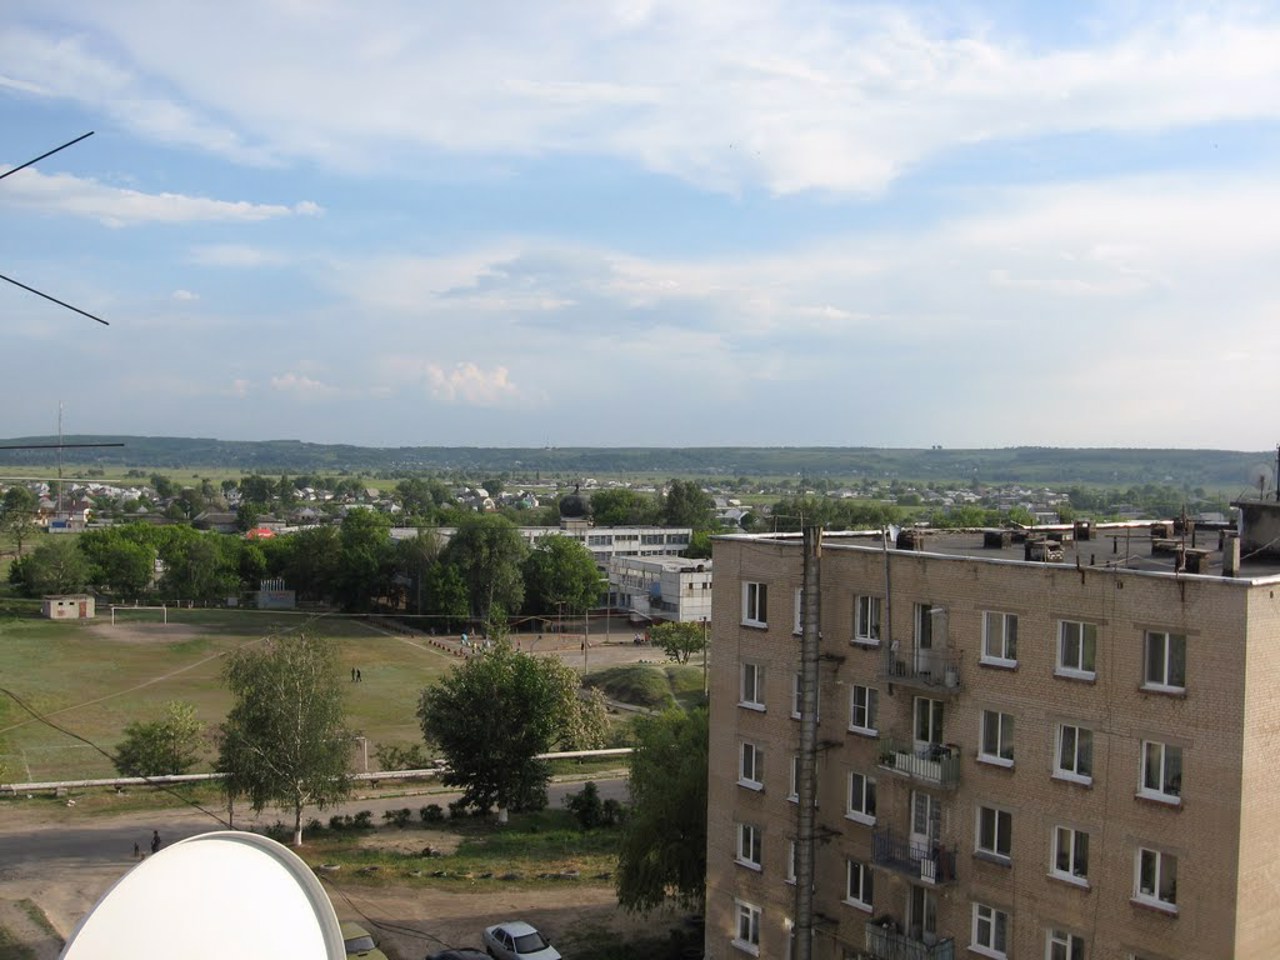 Vasyshcheve village